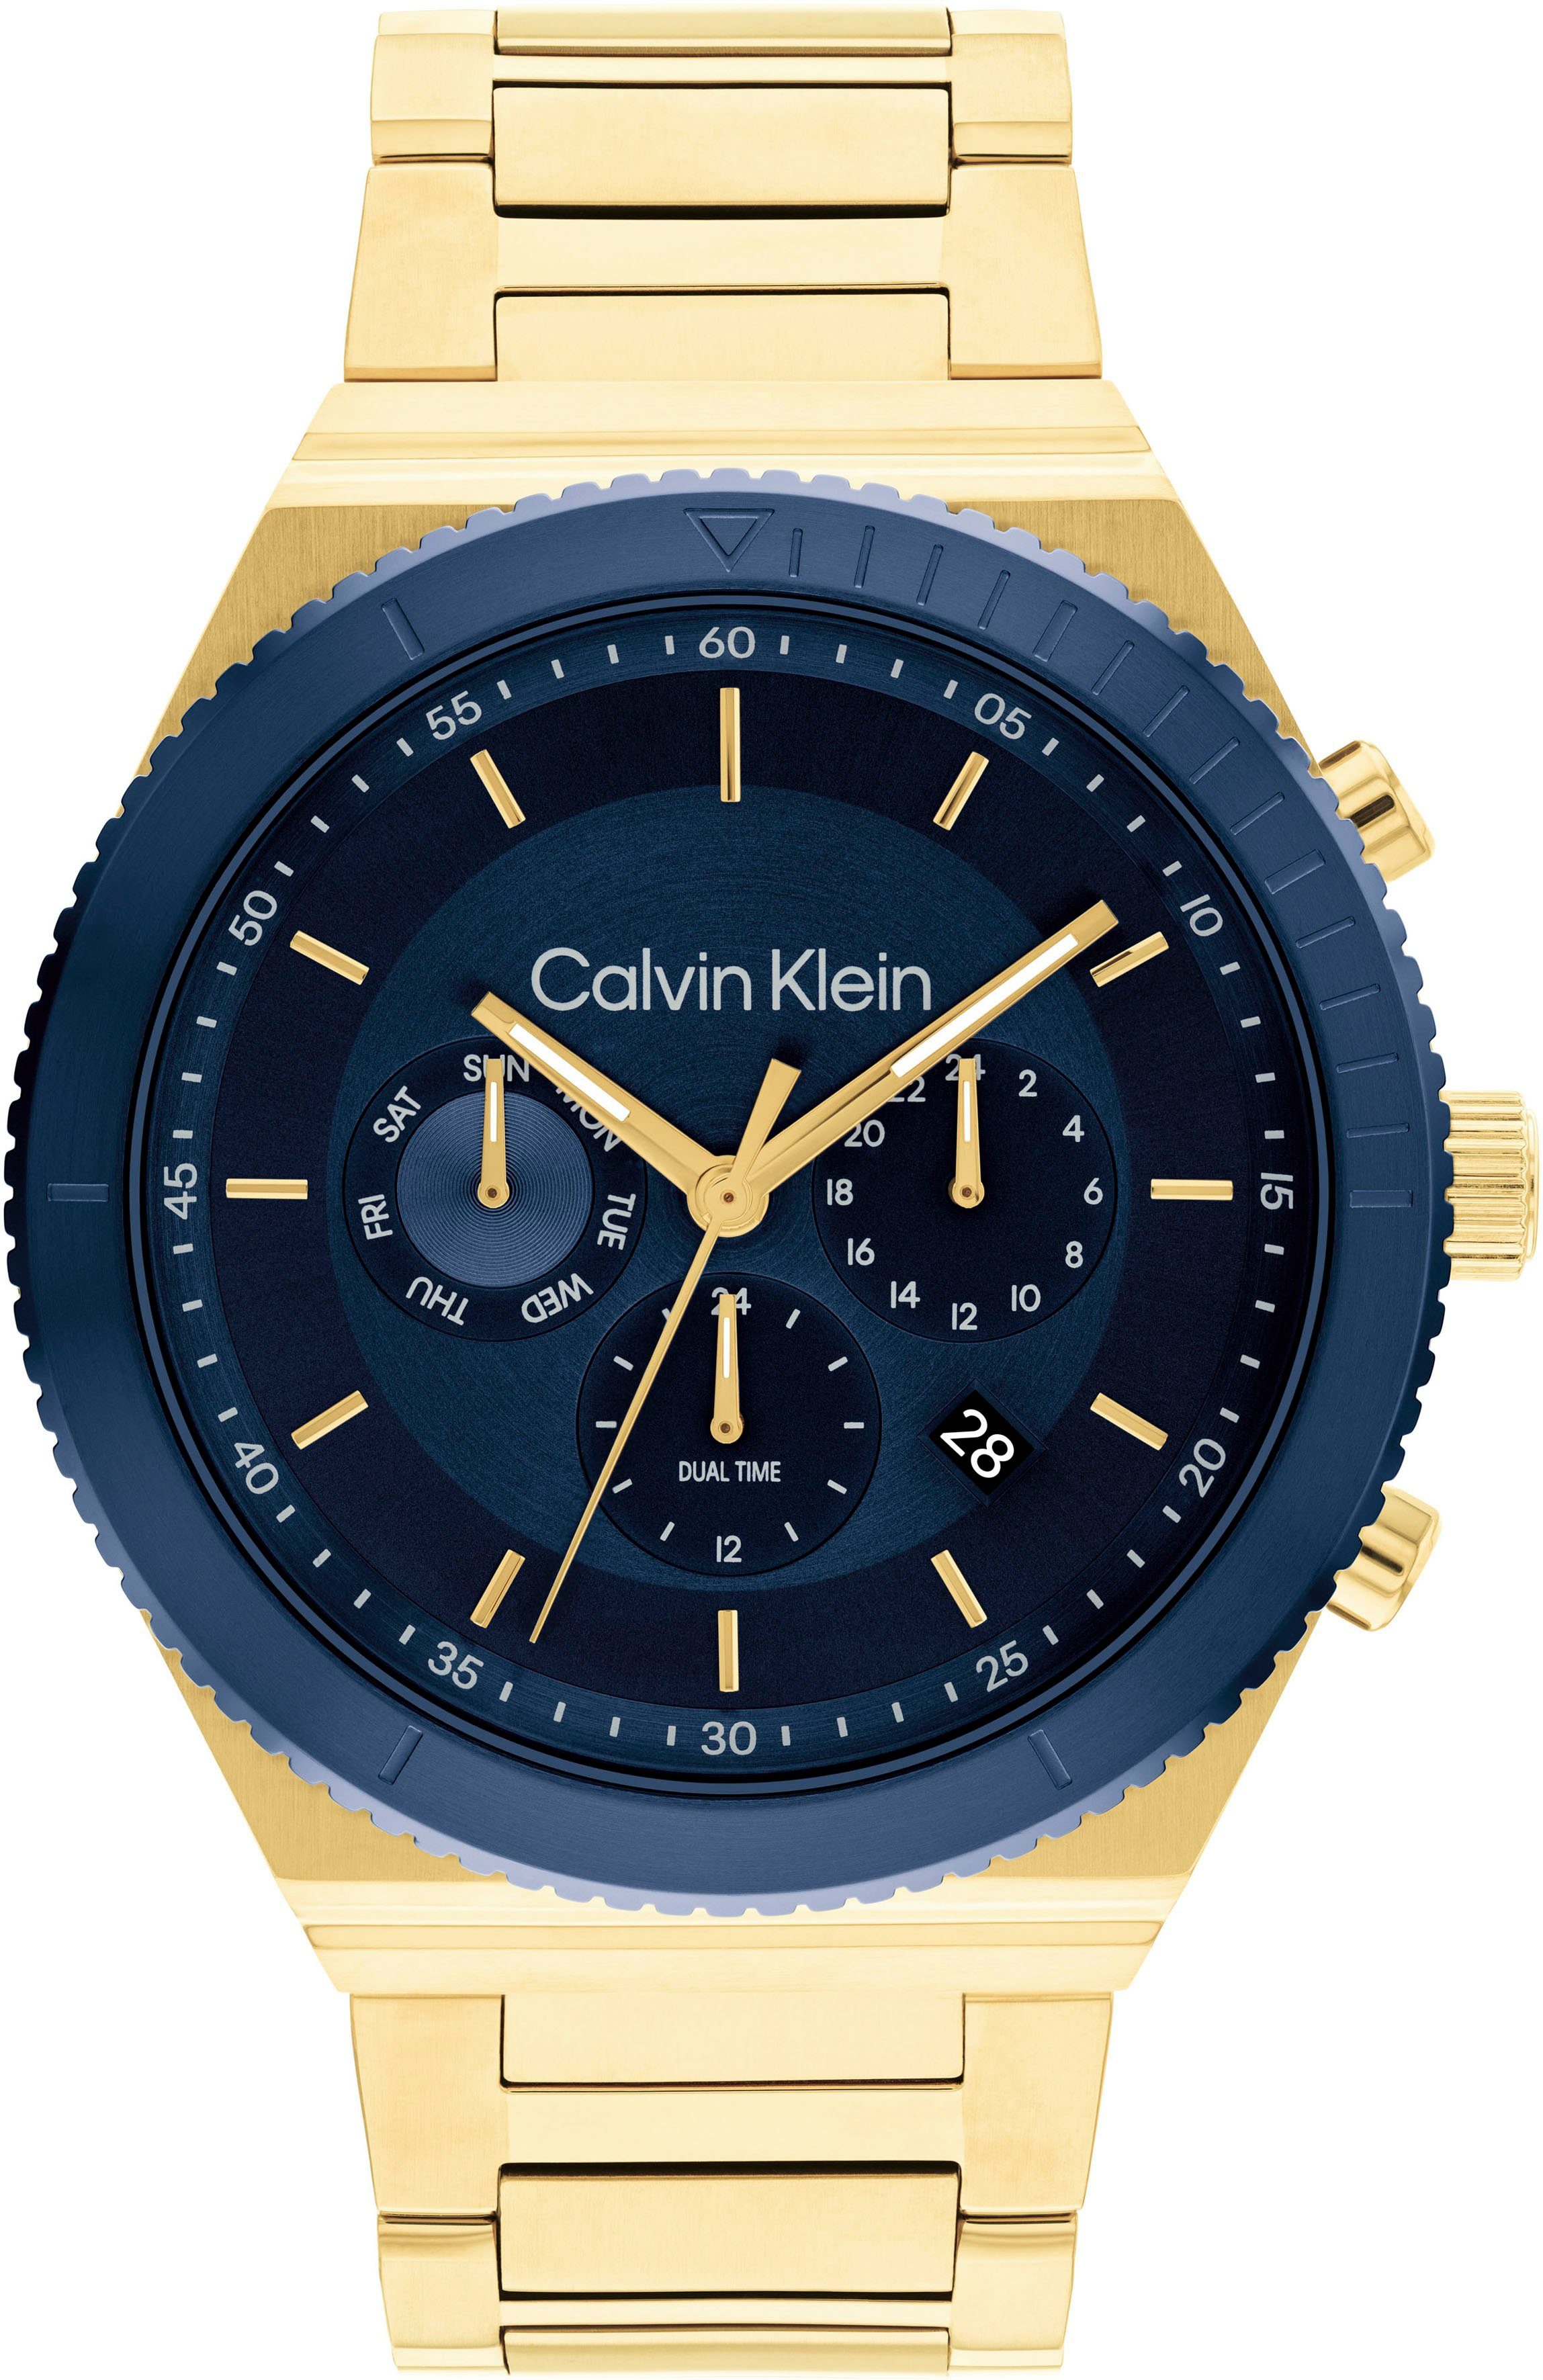 Calvin Klein Multifunktionsuhr SPORT, 25200302, Quarzuhr, Armbanduhr, Herrenuhr, Datum, 12/24-Stunden-Anzeige